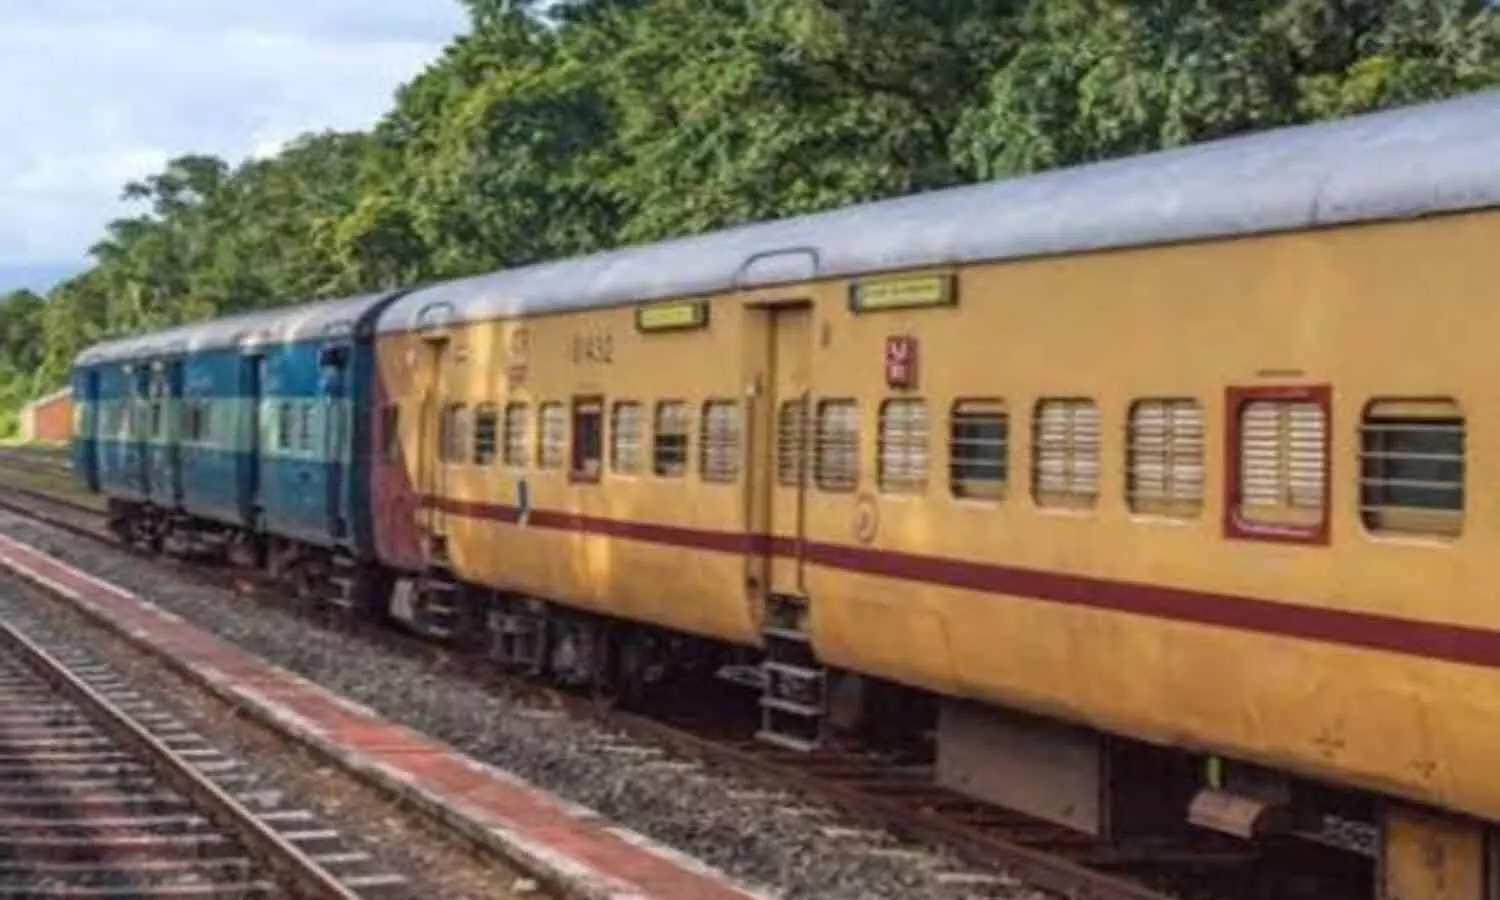 Railway News: एमपी के रेल यात्रियों को सुविधा, 28 सितम्बर से चलेगी यह स्पेशल ट्रेनें, फटाफट देखें रूट व शेड्यूल